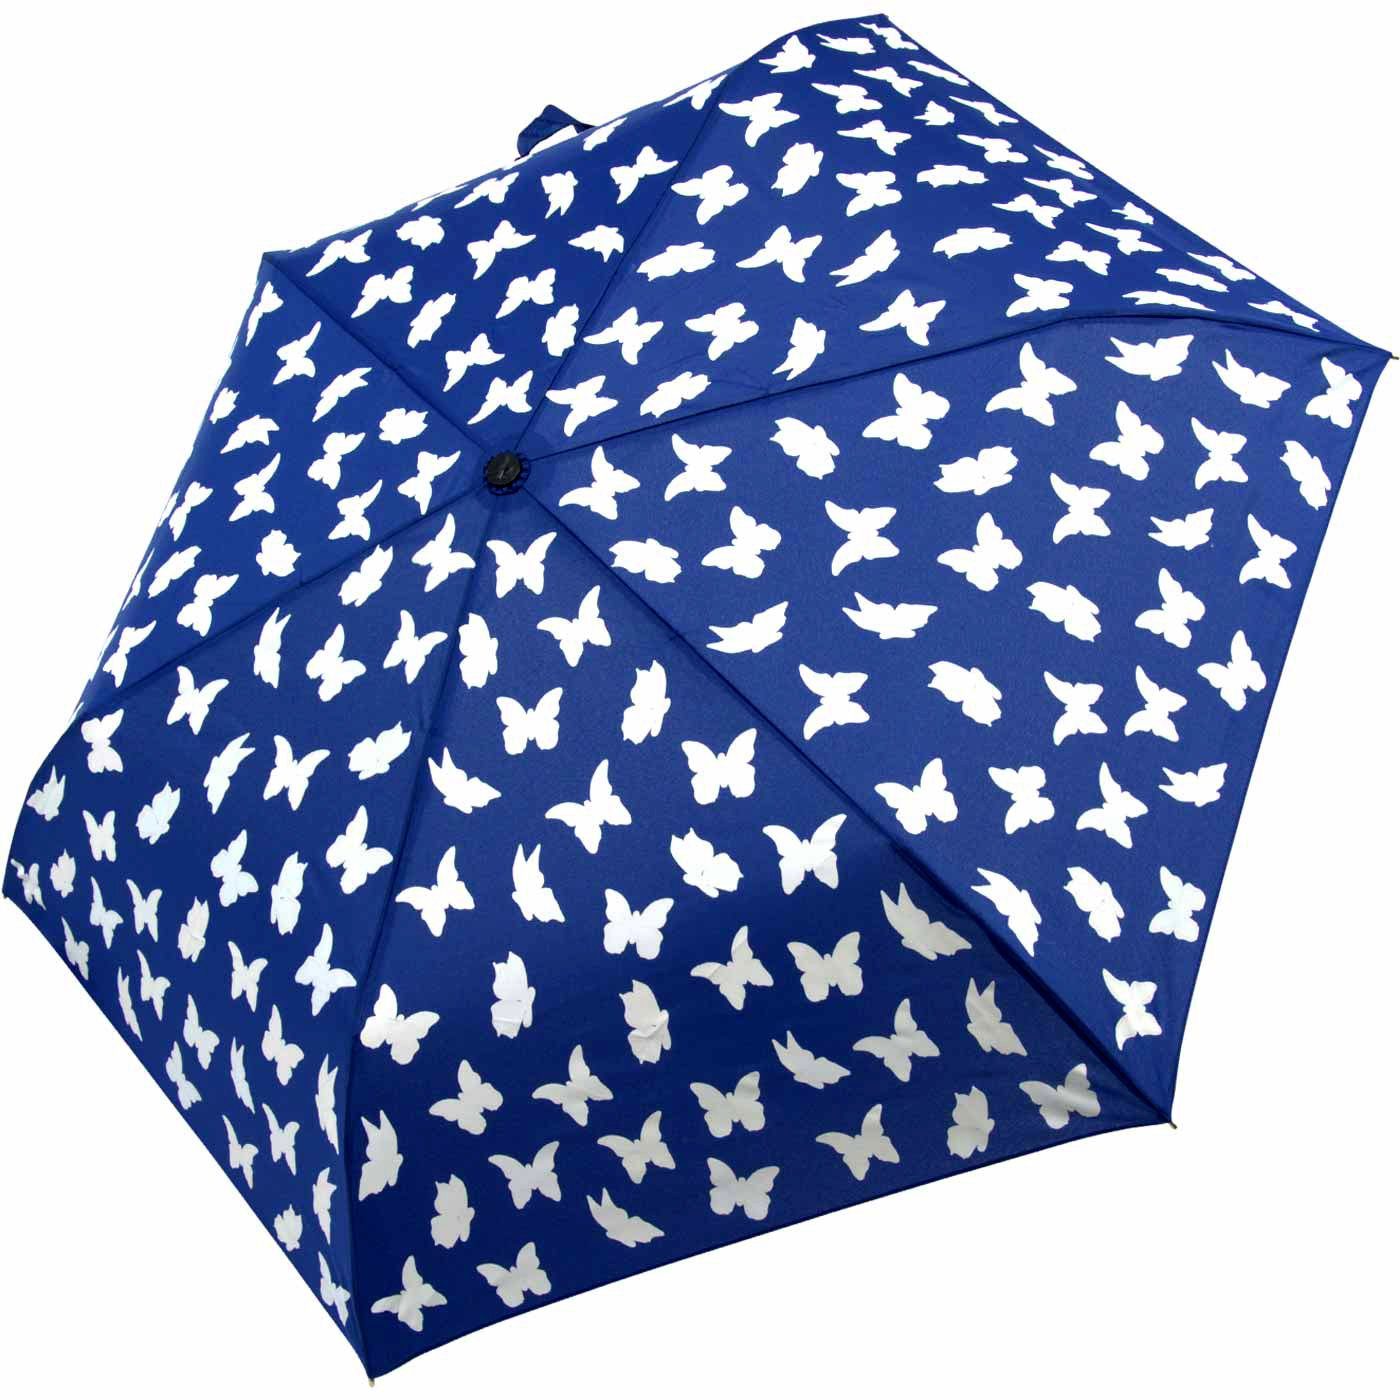 Nässe Wet Taschenregenschirm - Print Motiv, mit Schmetterlinge iX-brella Farbänderung bei Kinderschirm Mini iX-brella